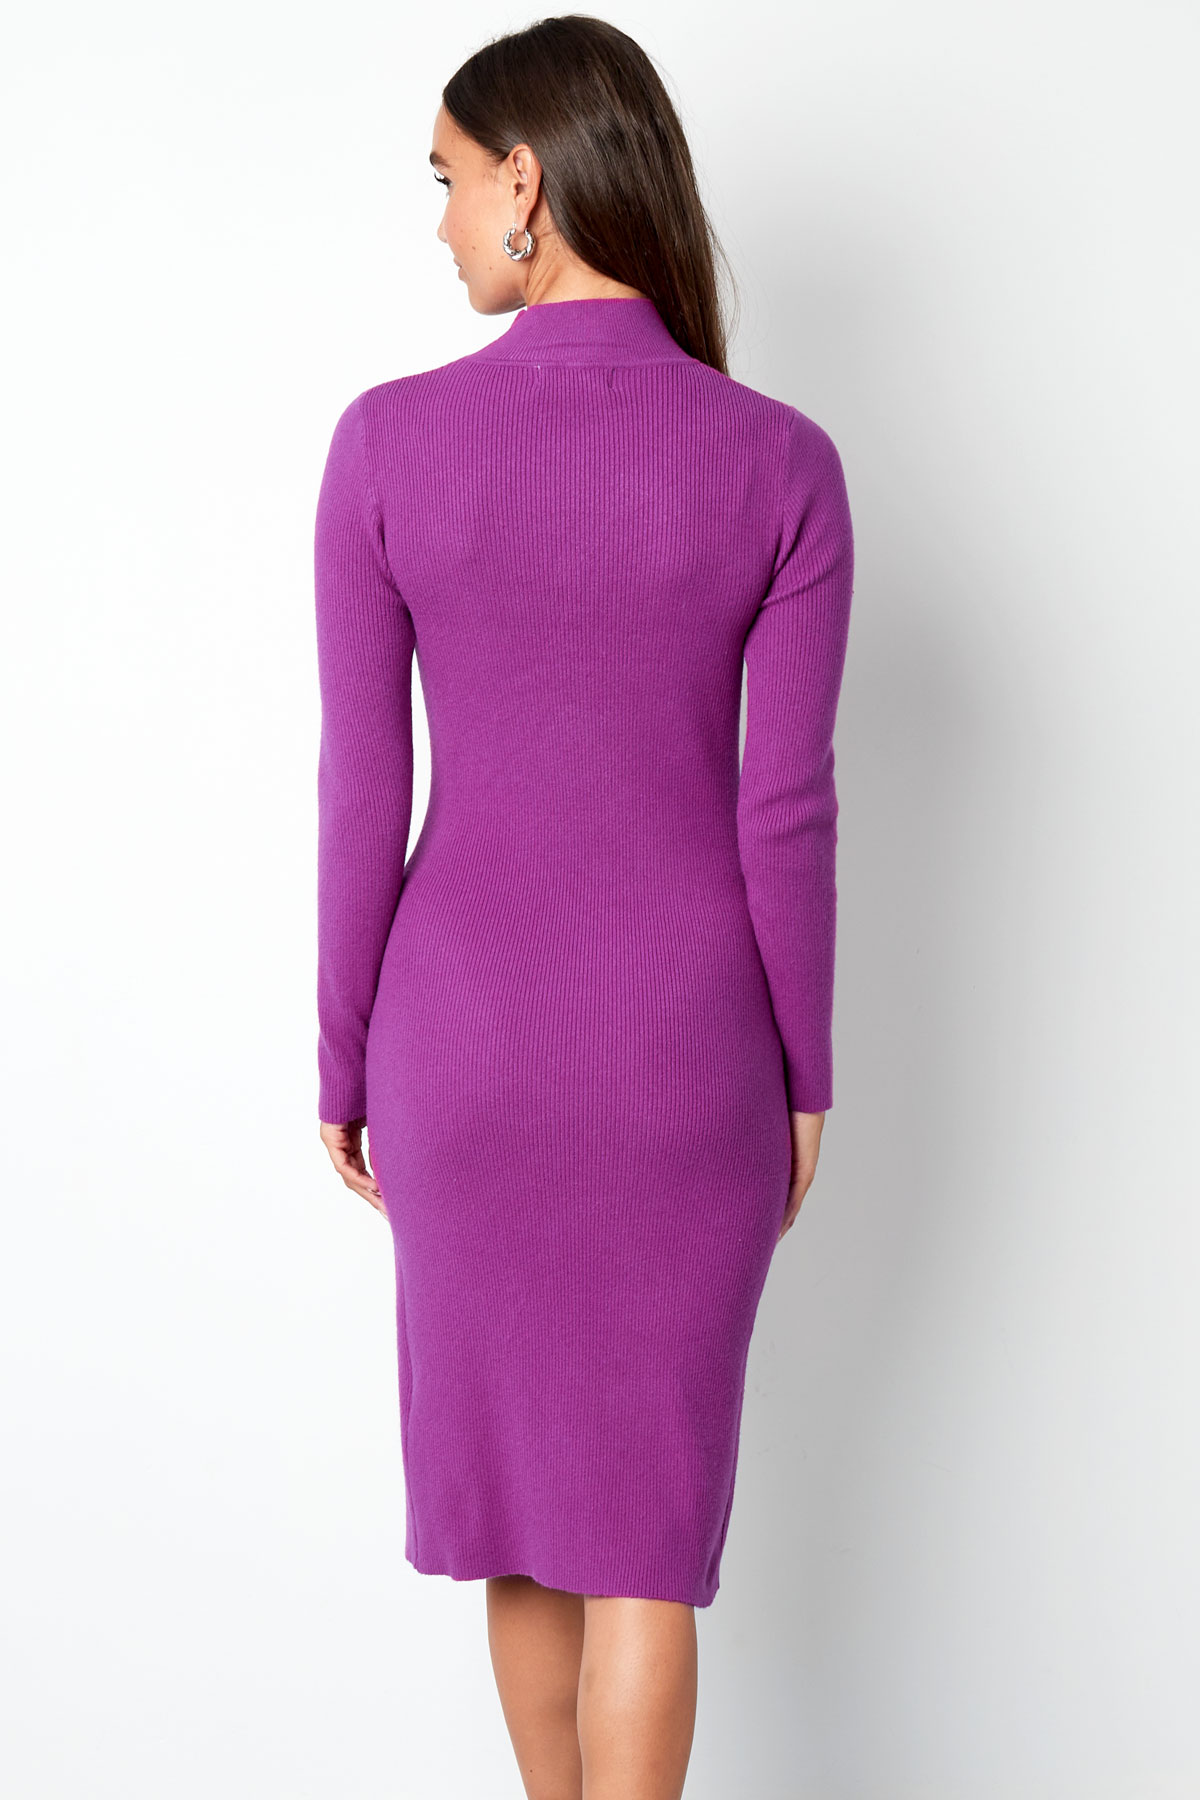 Vestido midi con abertura - violeta h5 Imagen12